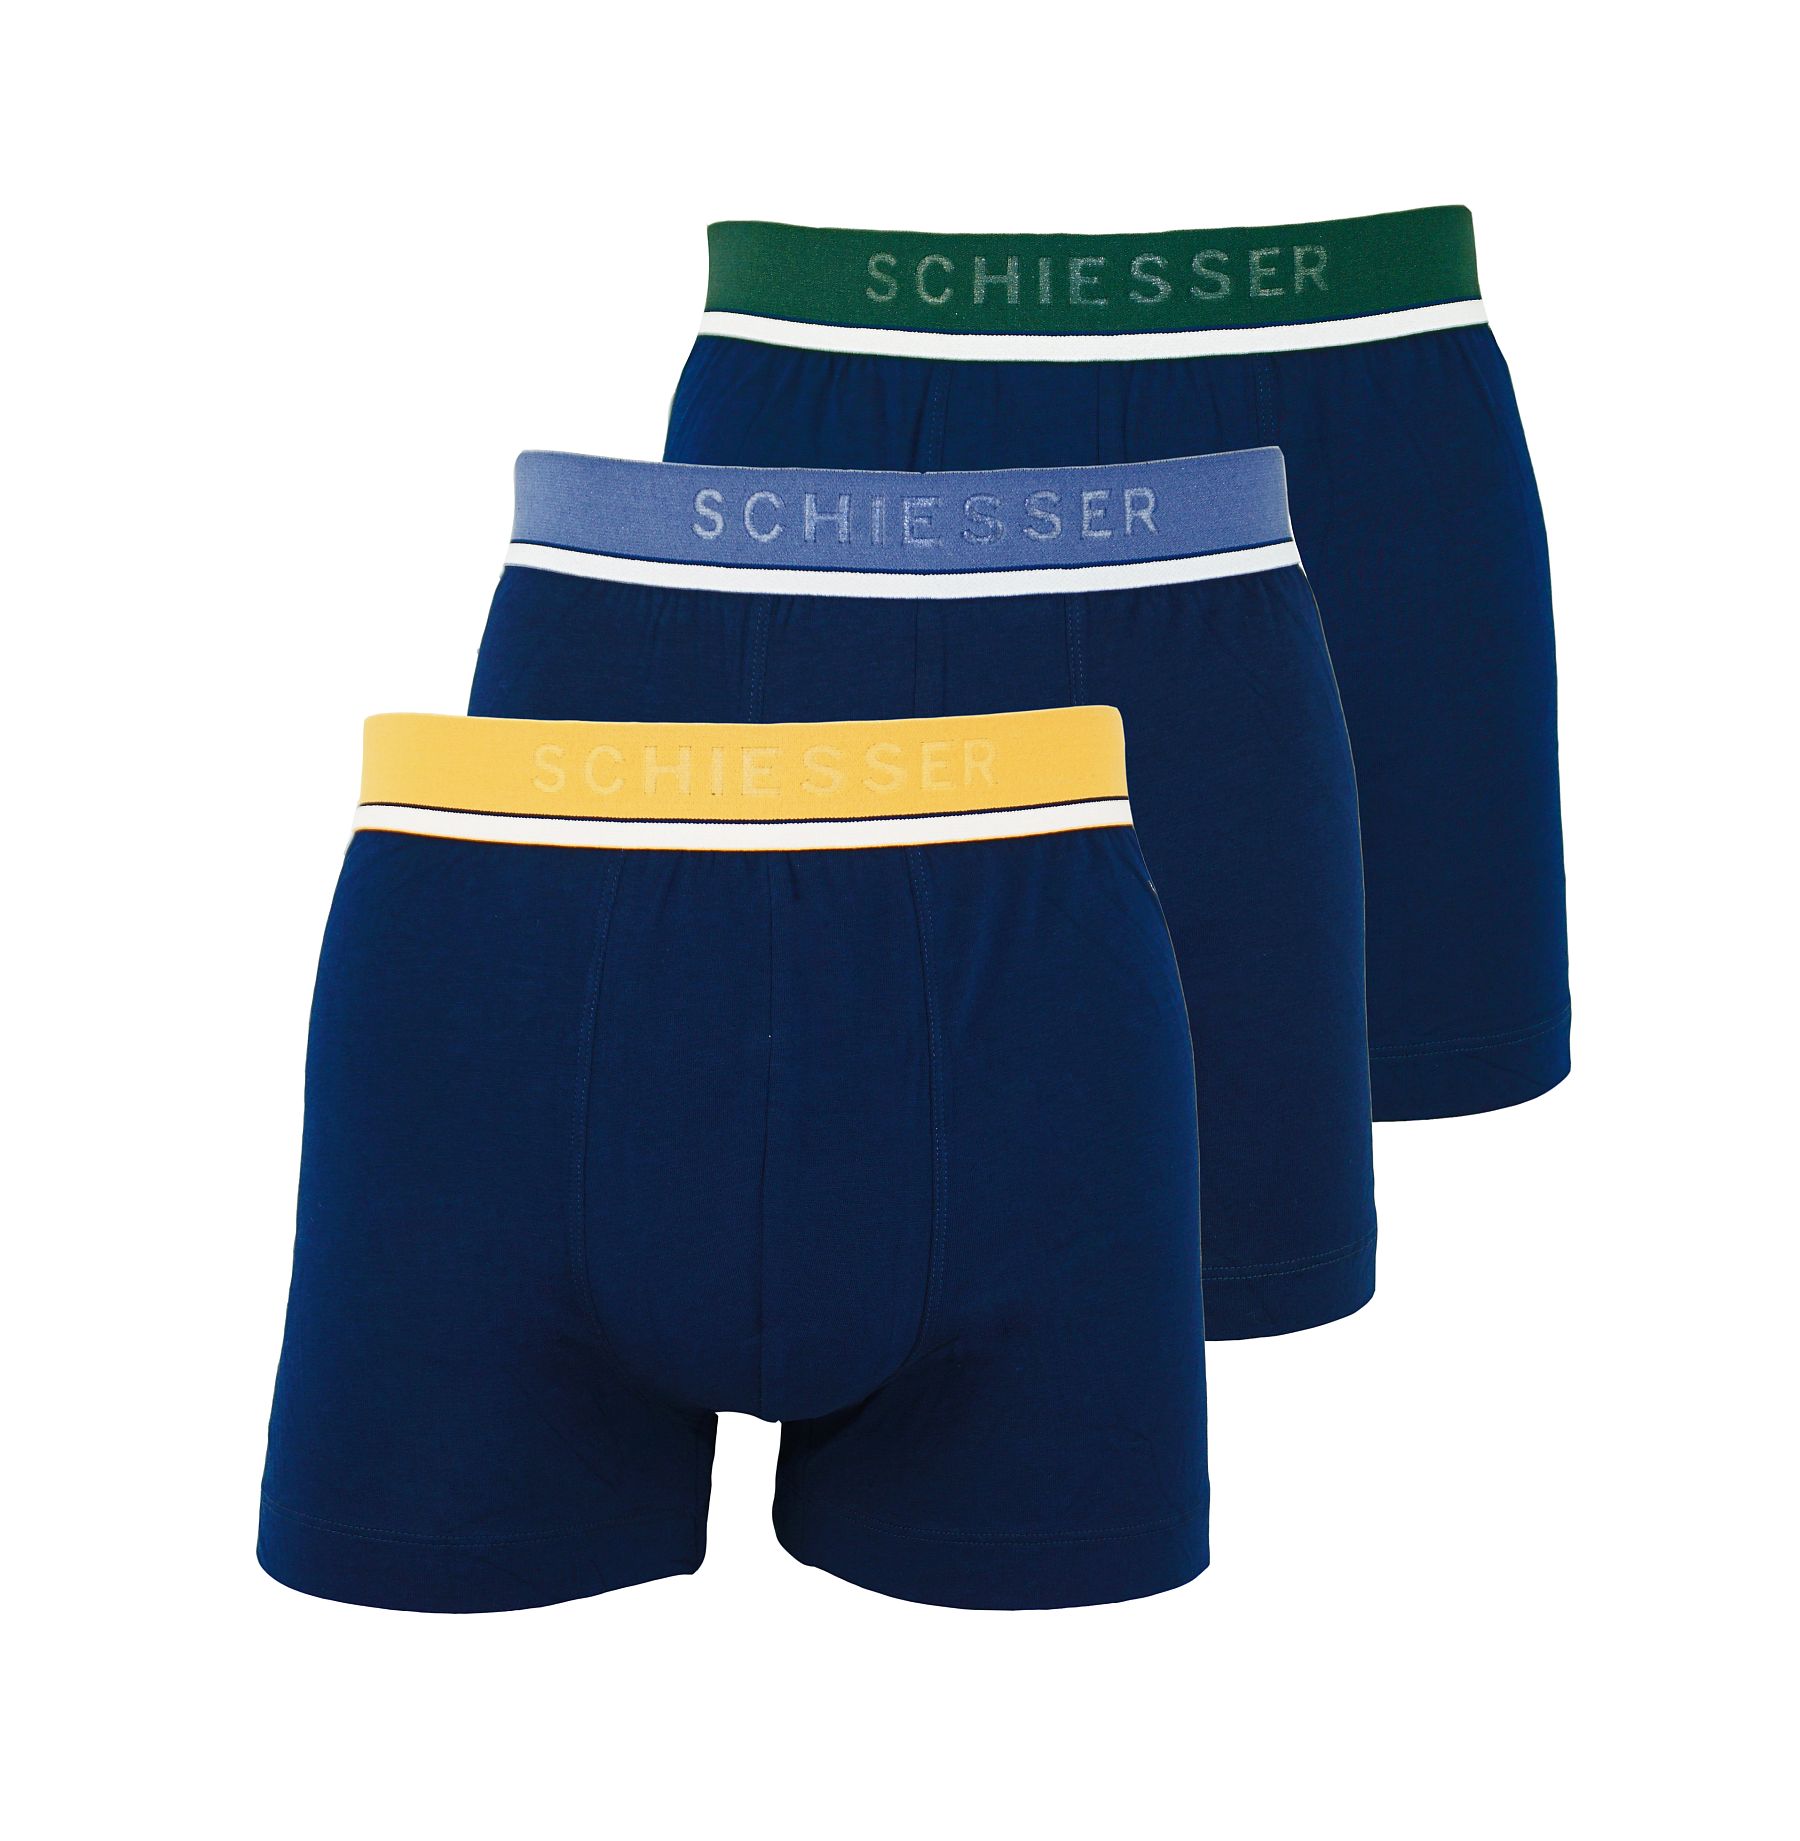 Боксеры Schiesser Schiesser Boxershorts 3 Pack Unterhosen Shorts, синий